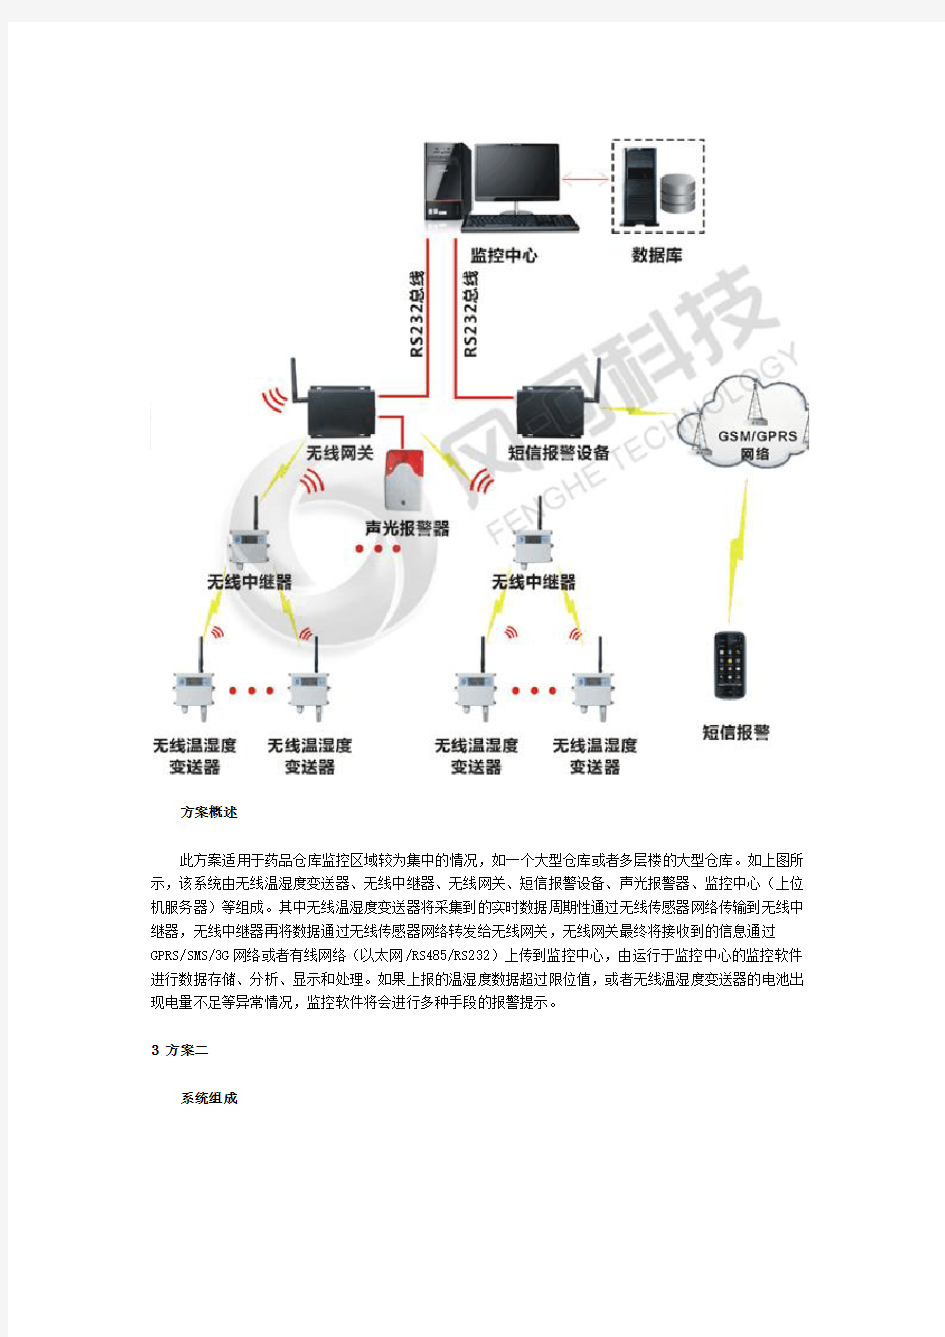 武汉风河科技-医药无线解决方案-231013